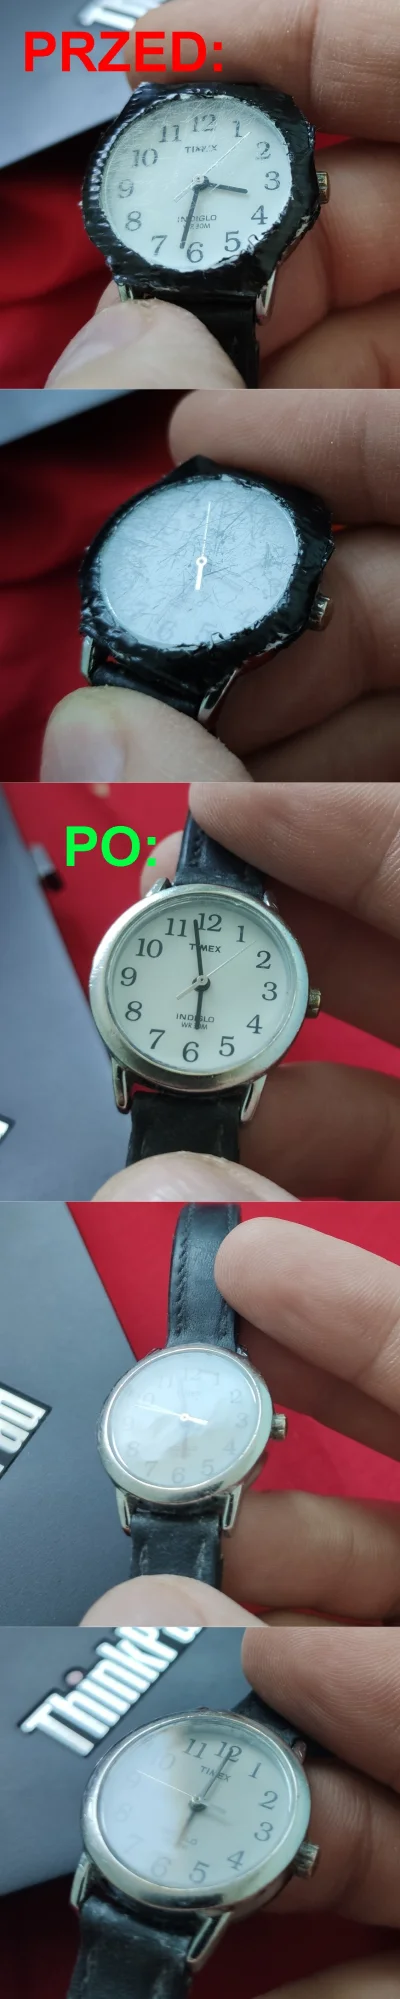 pstrag - Przedstawiam efekt polerowania szkła mineralnego w zegarku mojej mamy: bliże...